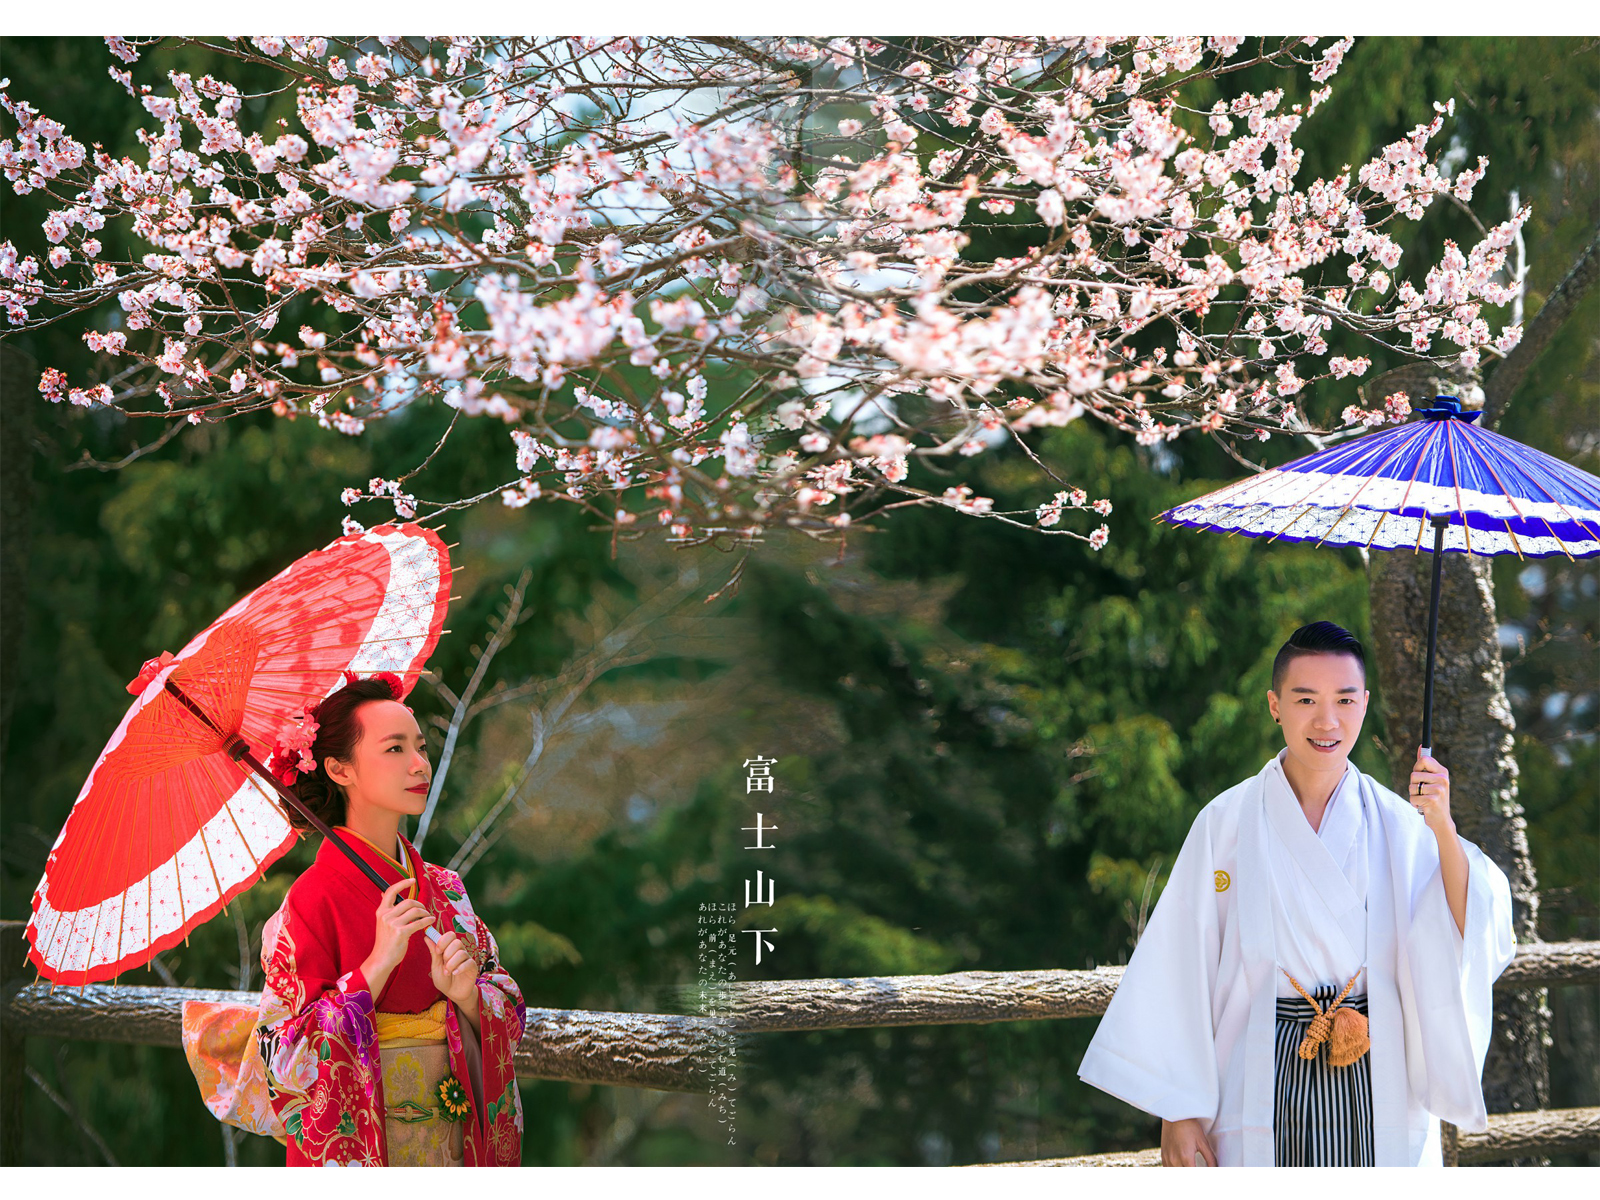 【日本旅拍の客樣欣賞】富士山下帶著櫻花味道的浪漫